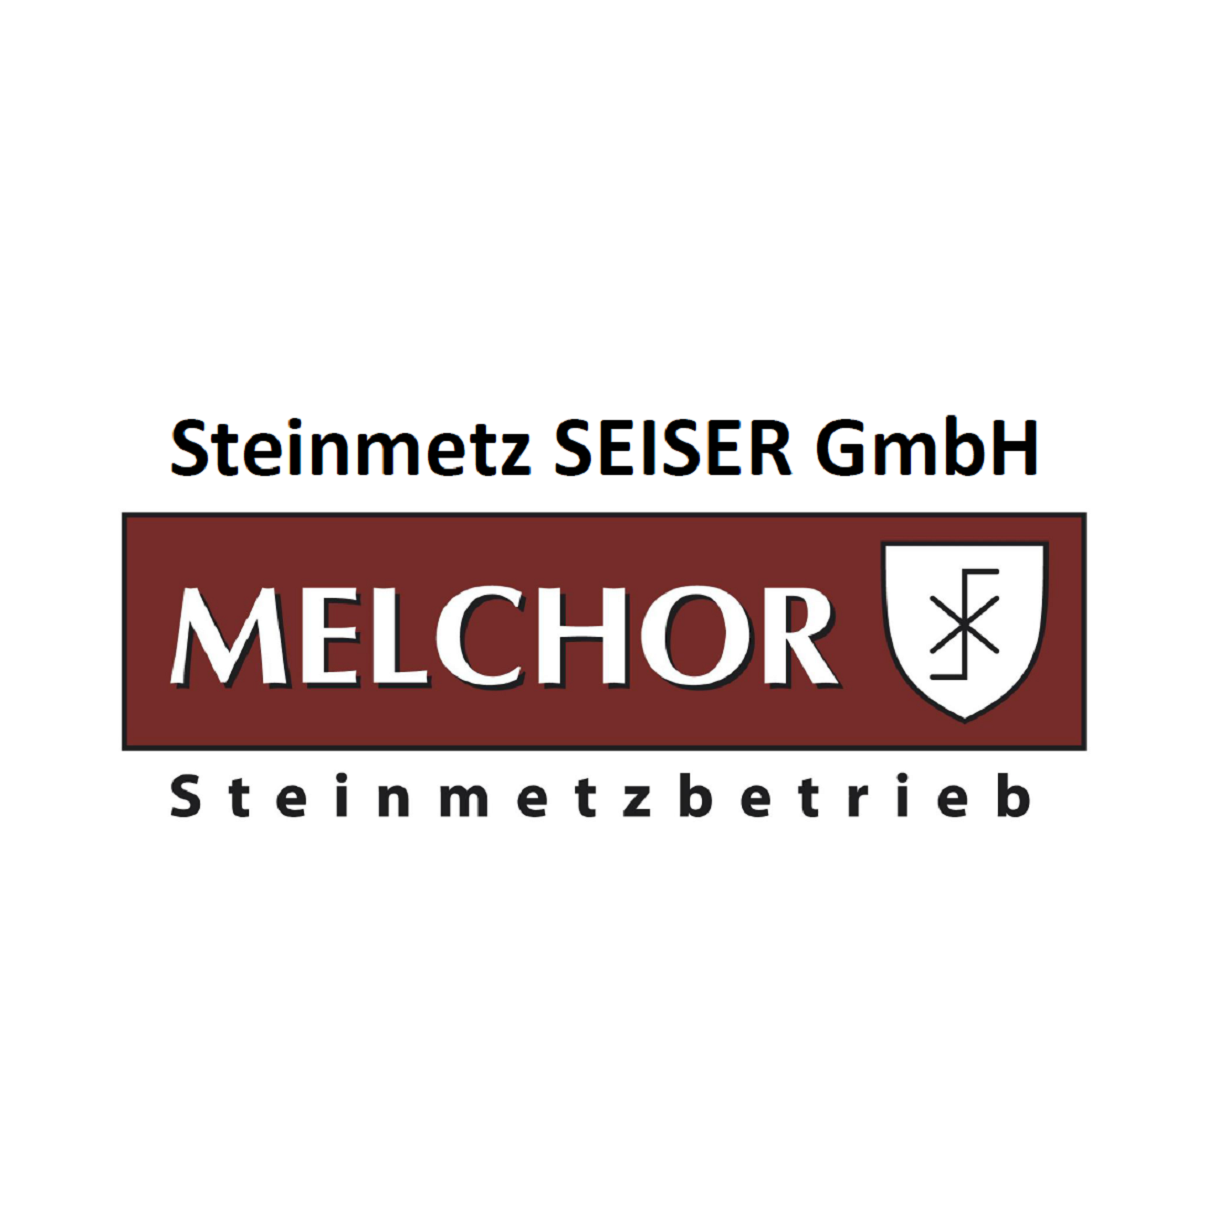 Steinmetz Seiser GmbH vormals Melchor Logo